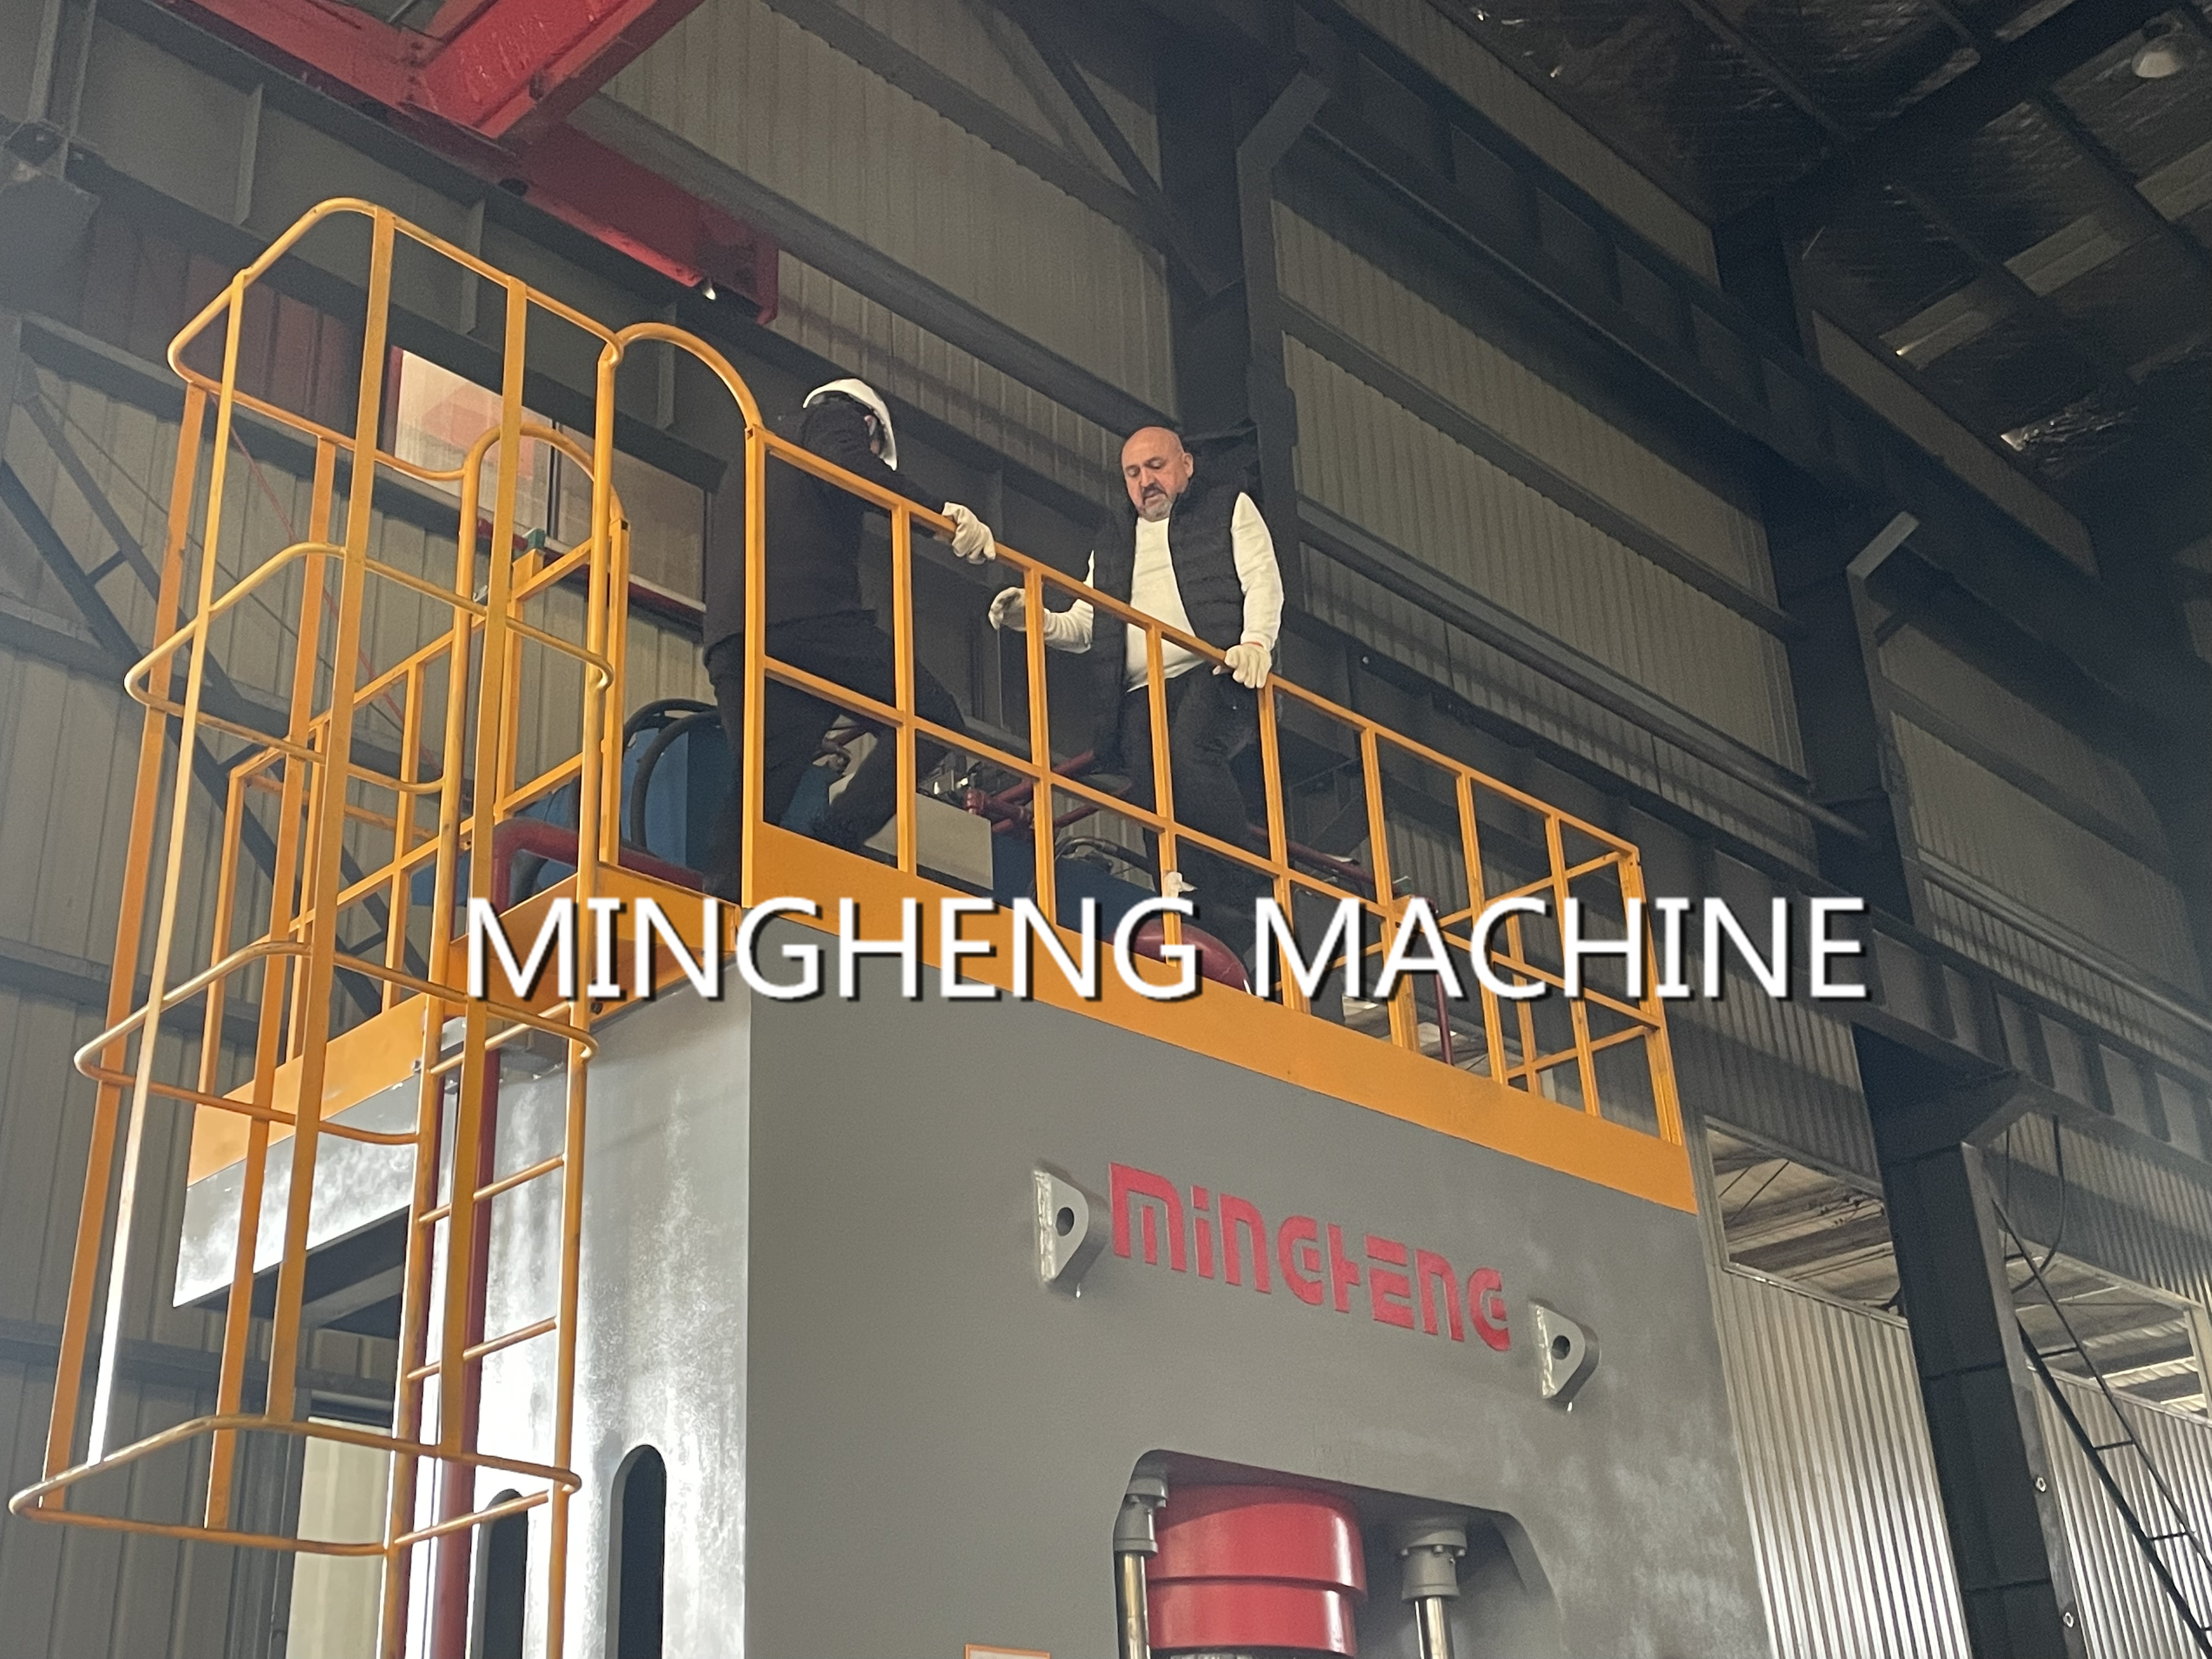 Mingheng ha completado una línea completa de accesorios y equipos de hasta 6 pulgadas para uno de nuestros clientes en los Emiratos Árabes Unidos.